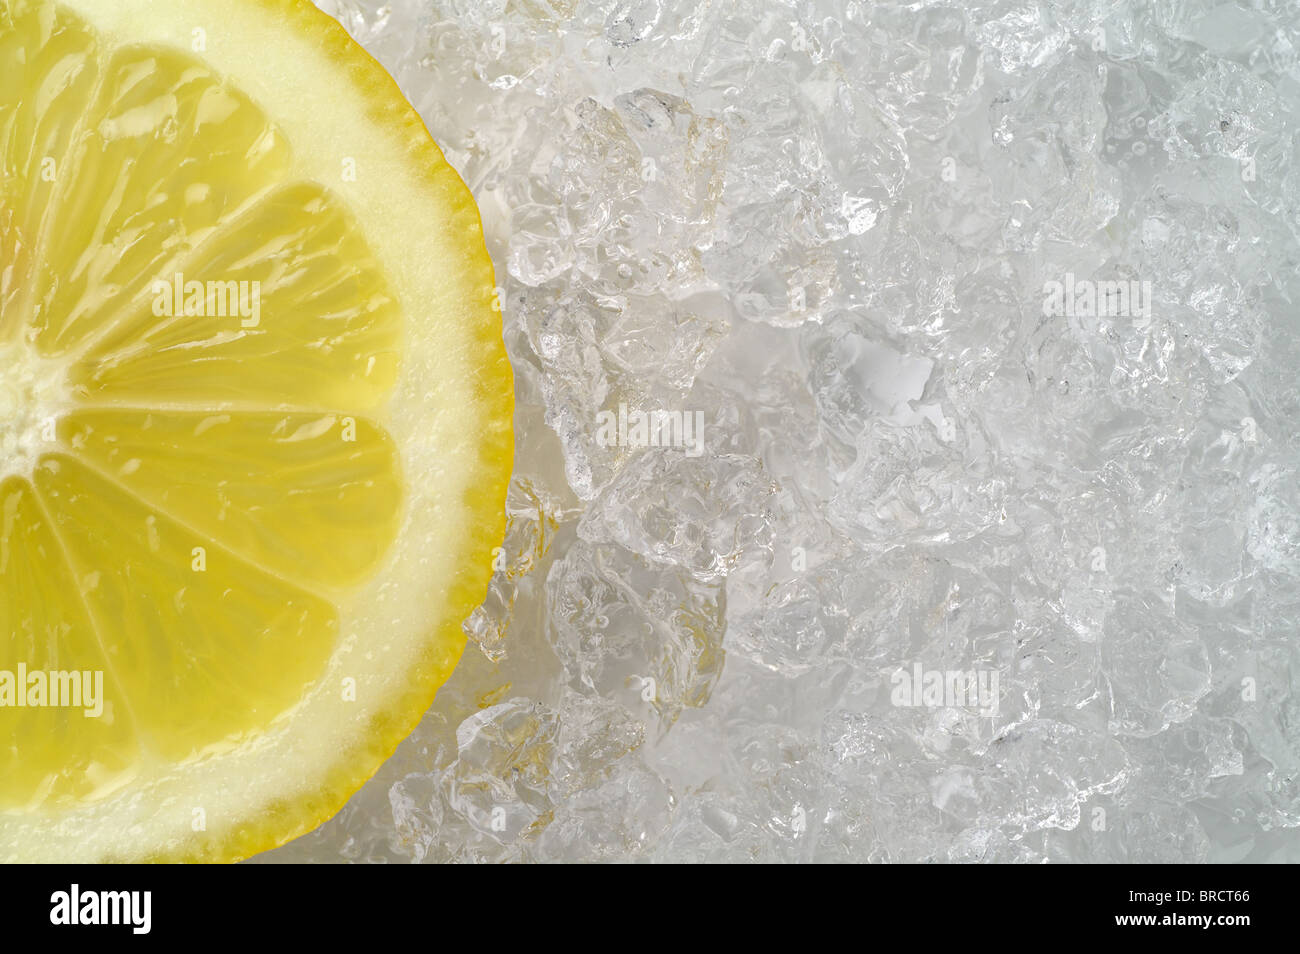 Lemon slice on crushed ice Stock Photo